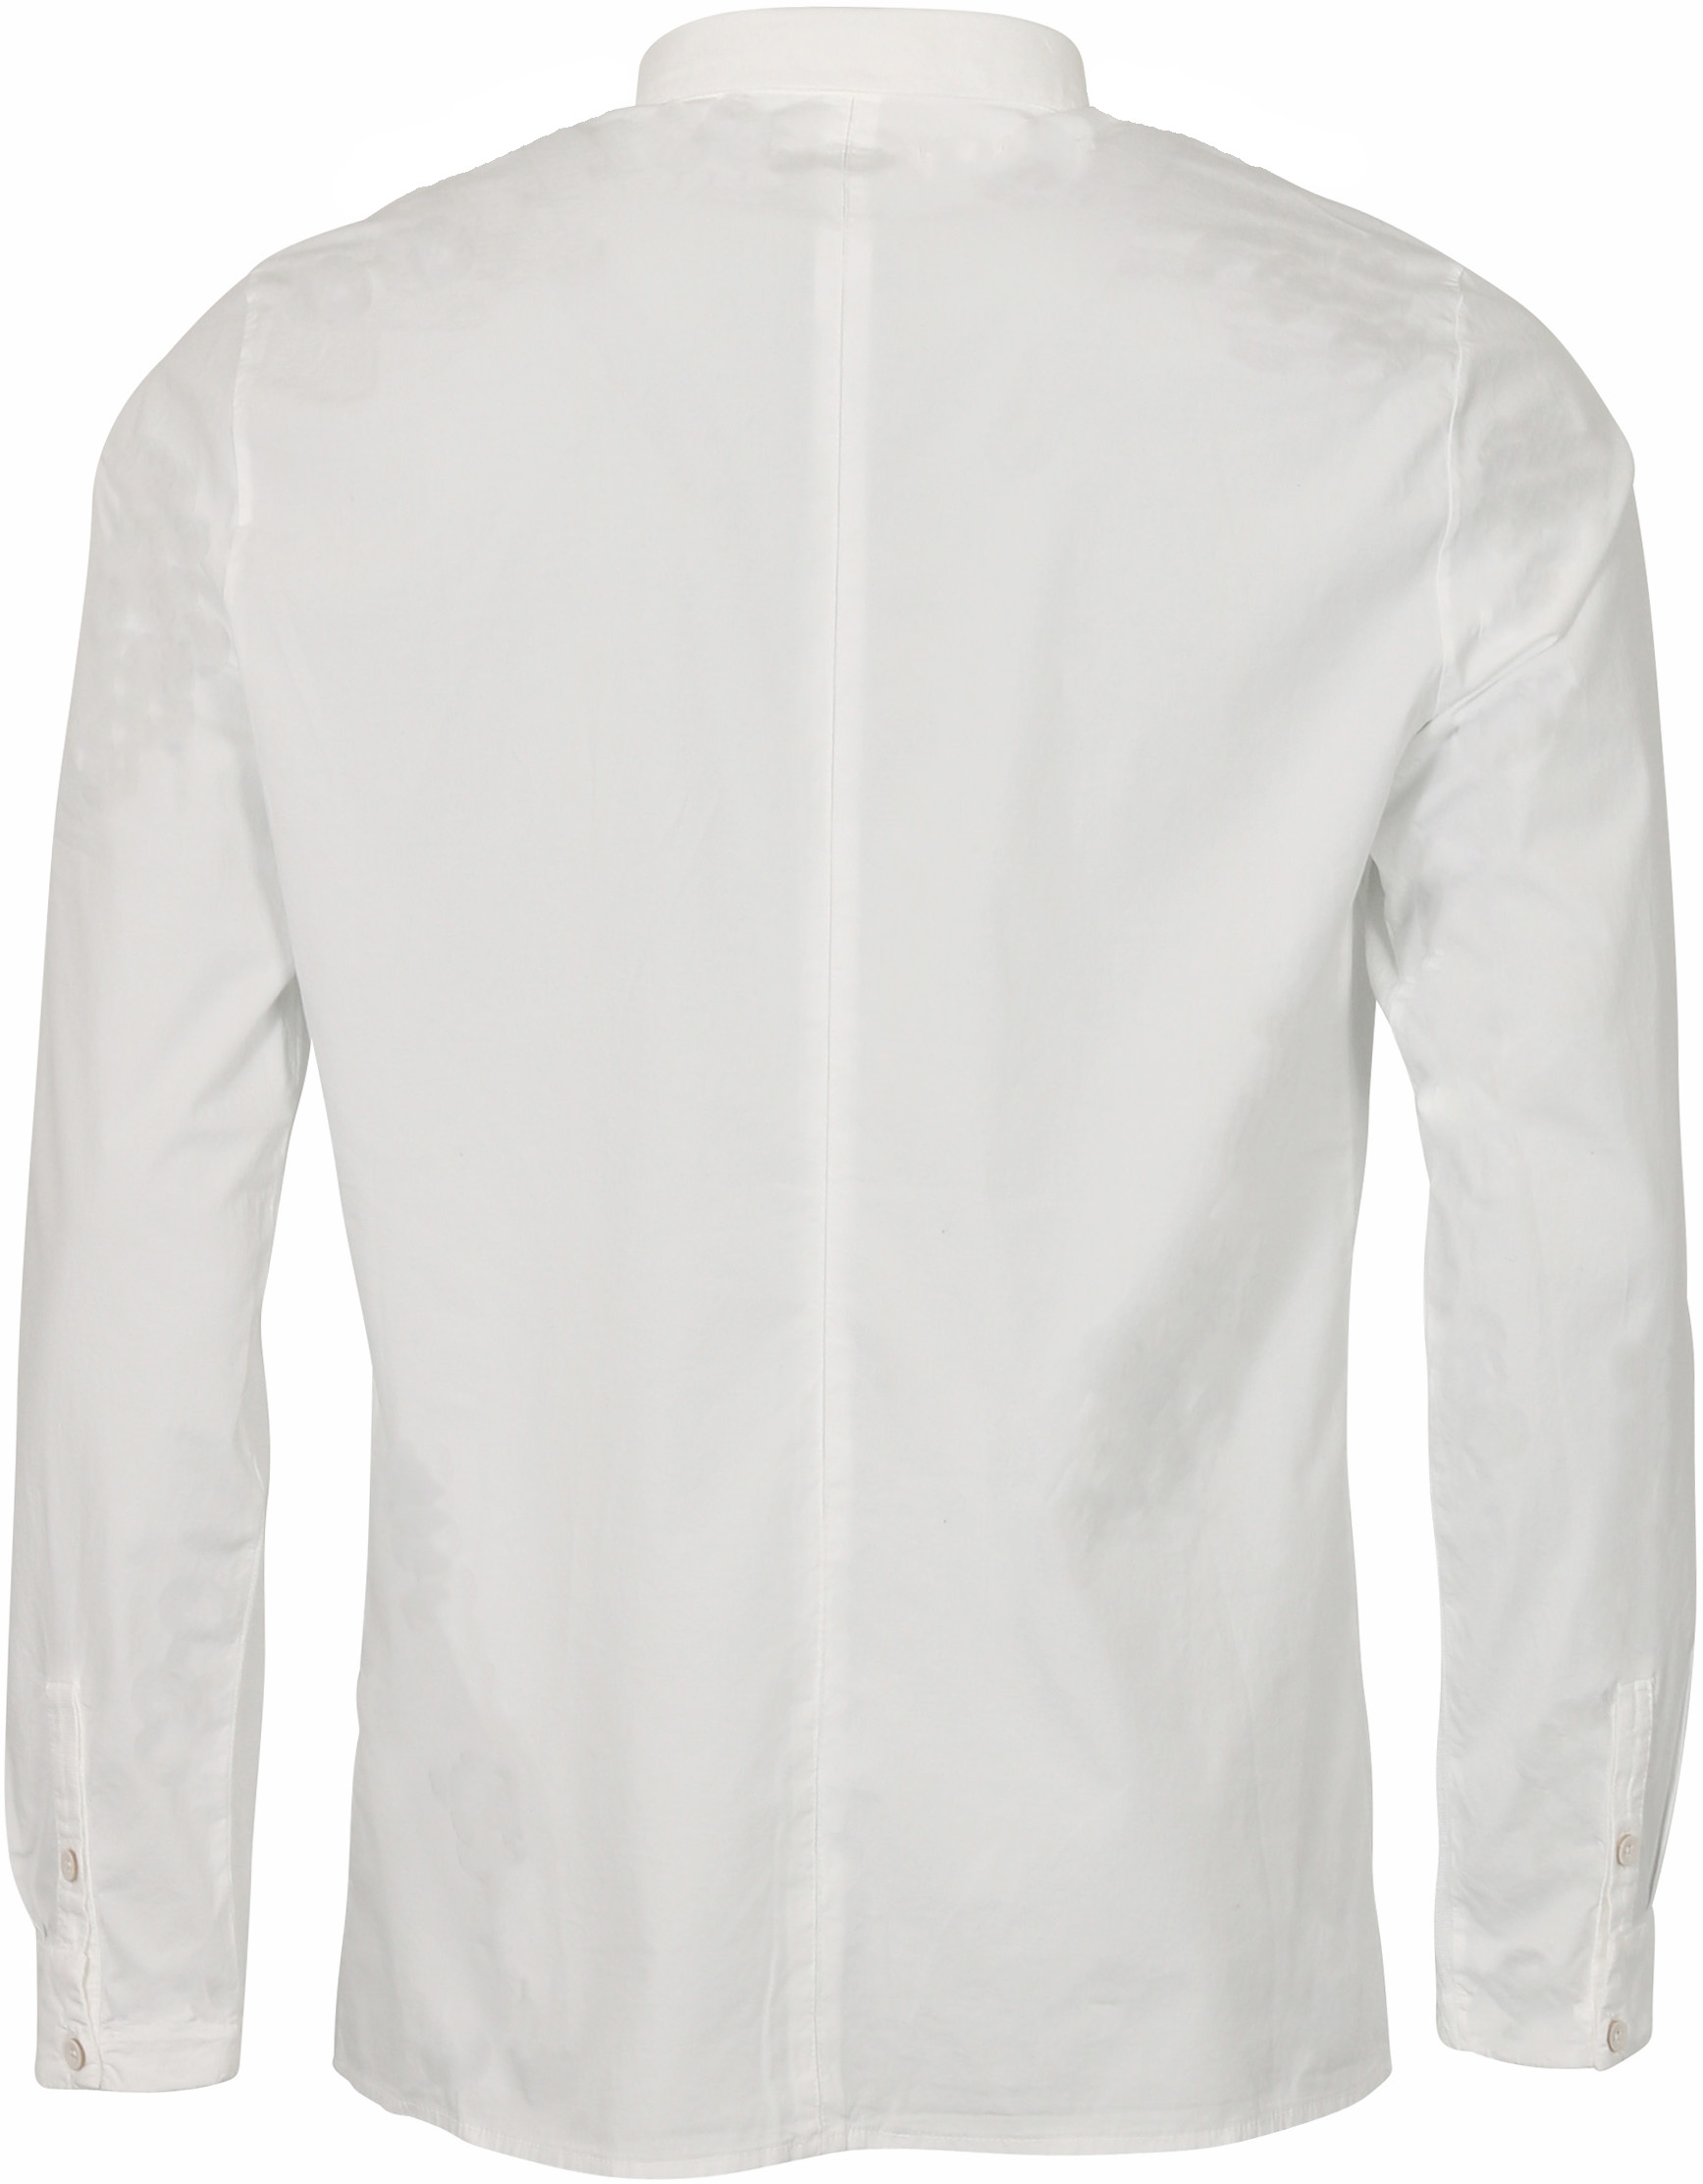 Transit Uomo Shirt White